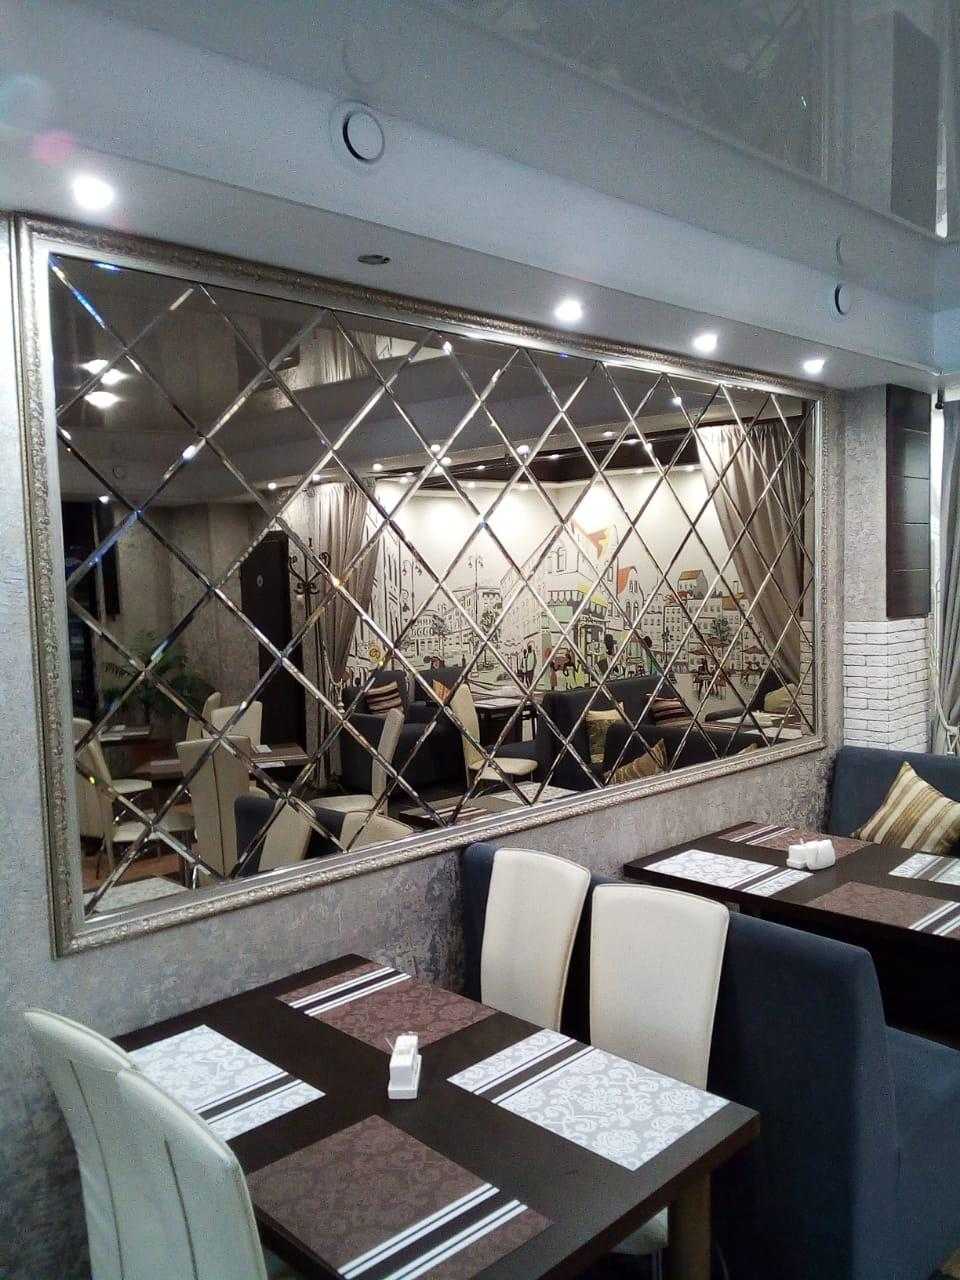 Оформление стены на кухне возле стола: над обеденным, дизайн, отделка, зеркало над столом